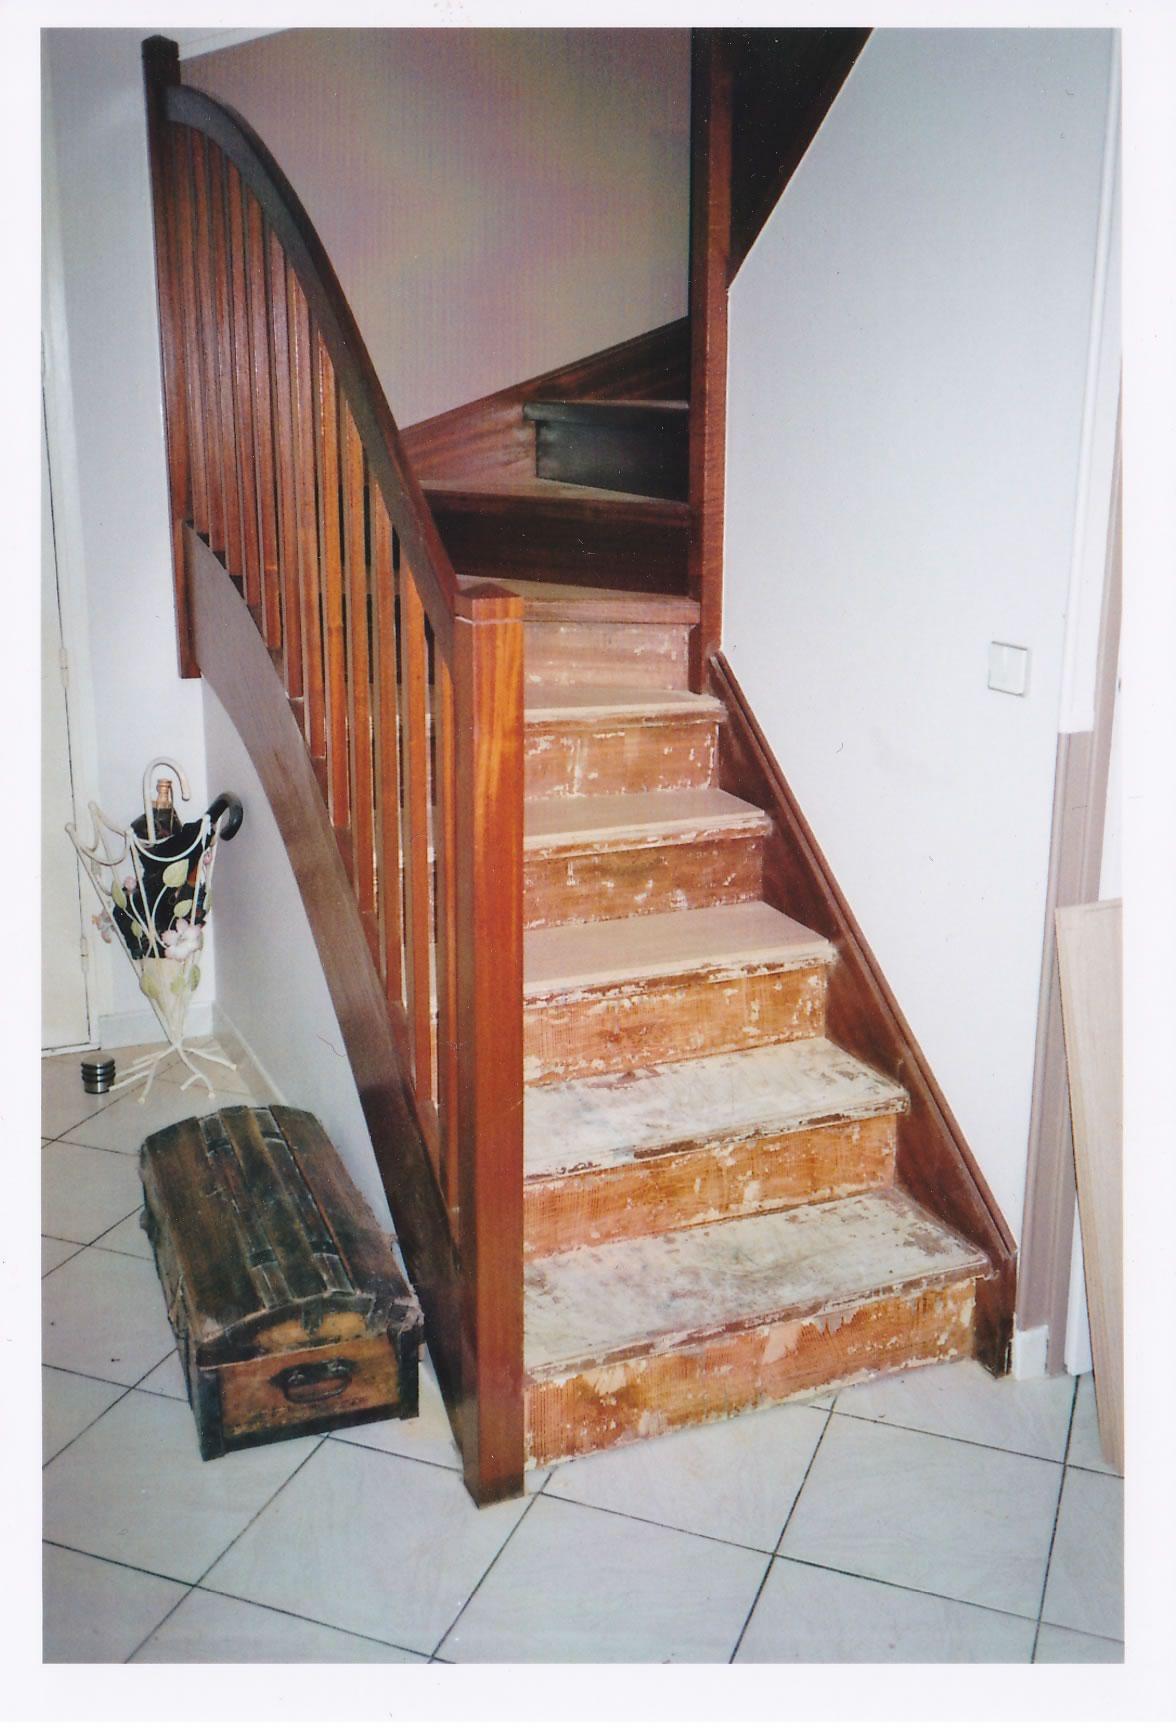 Vielle escalier endommagé